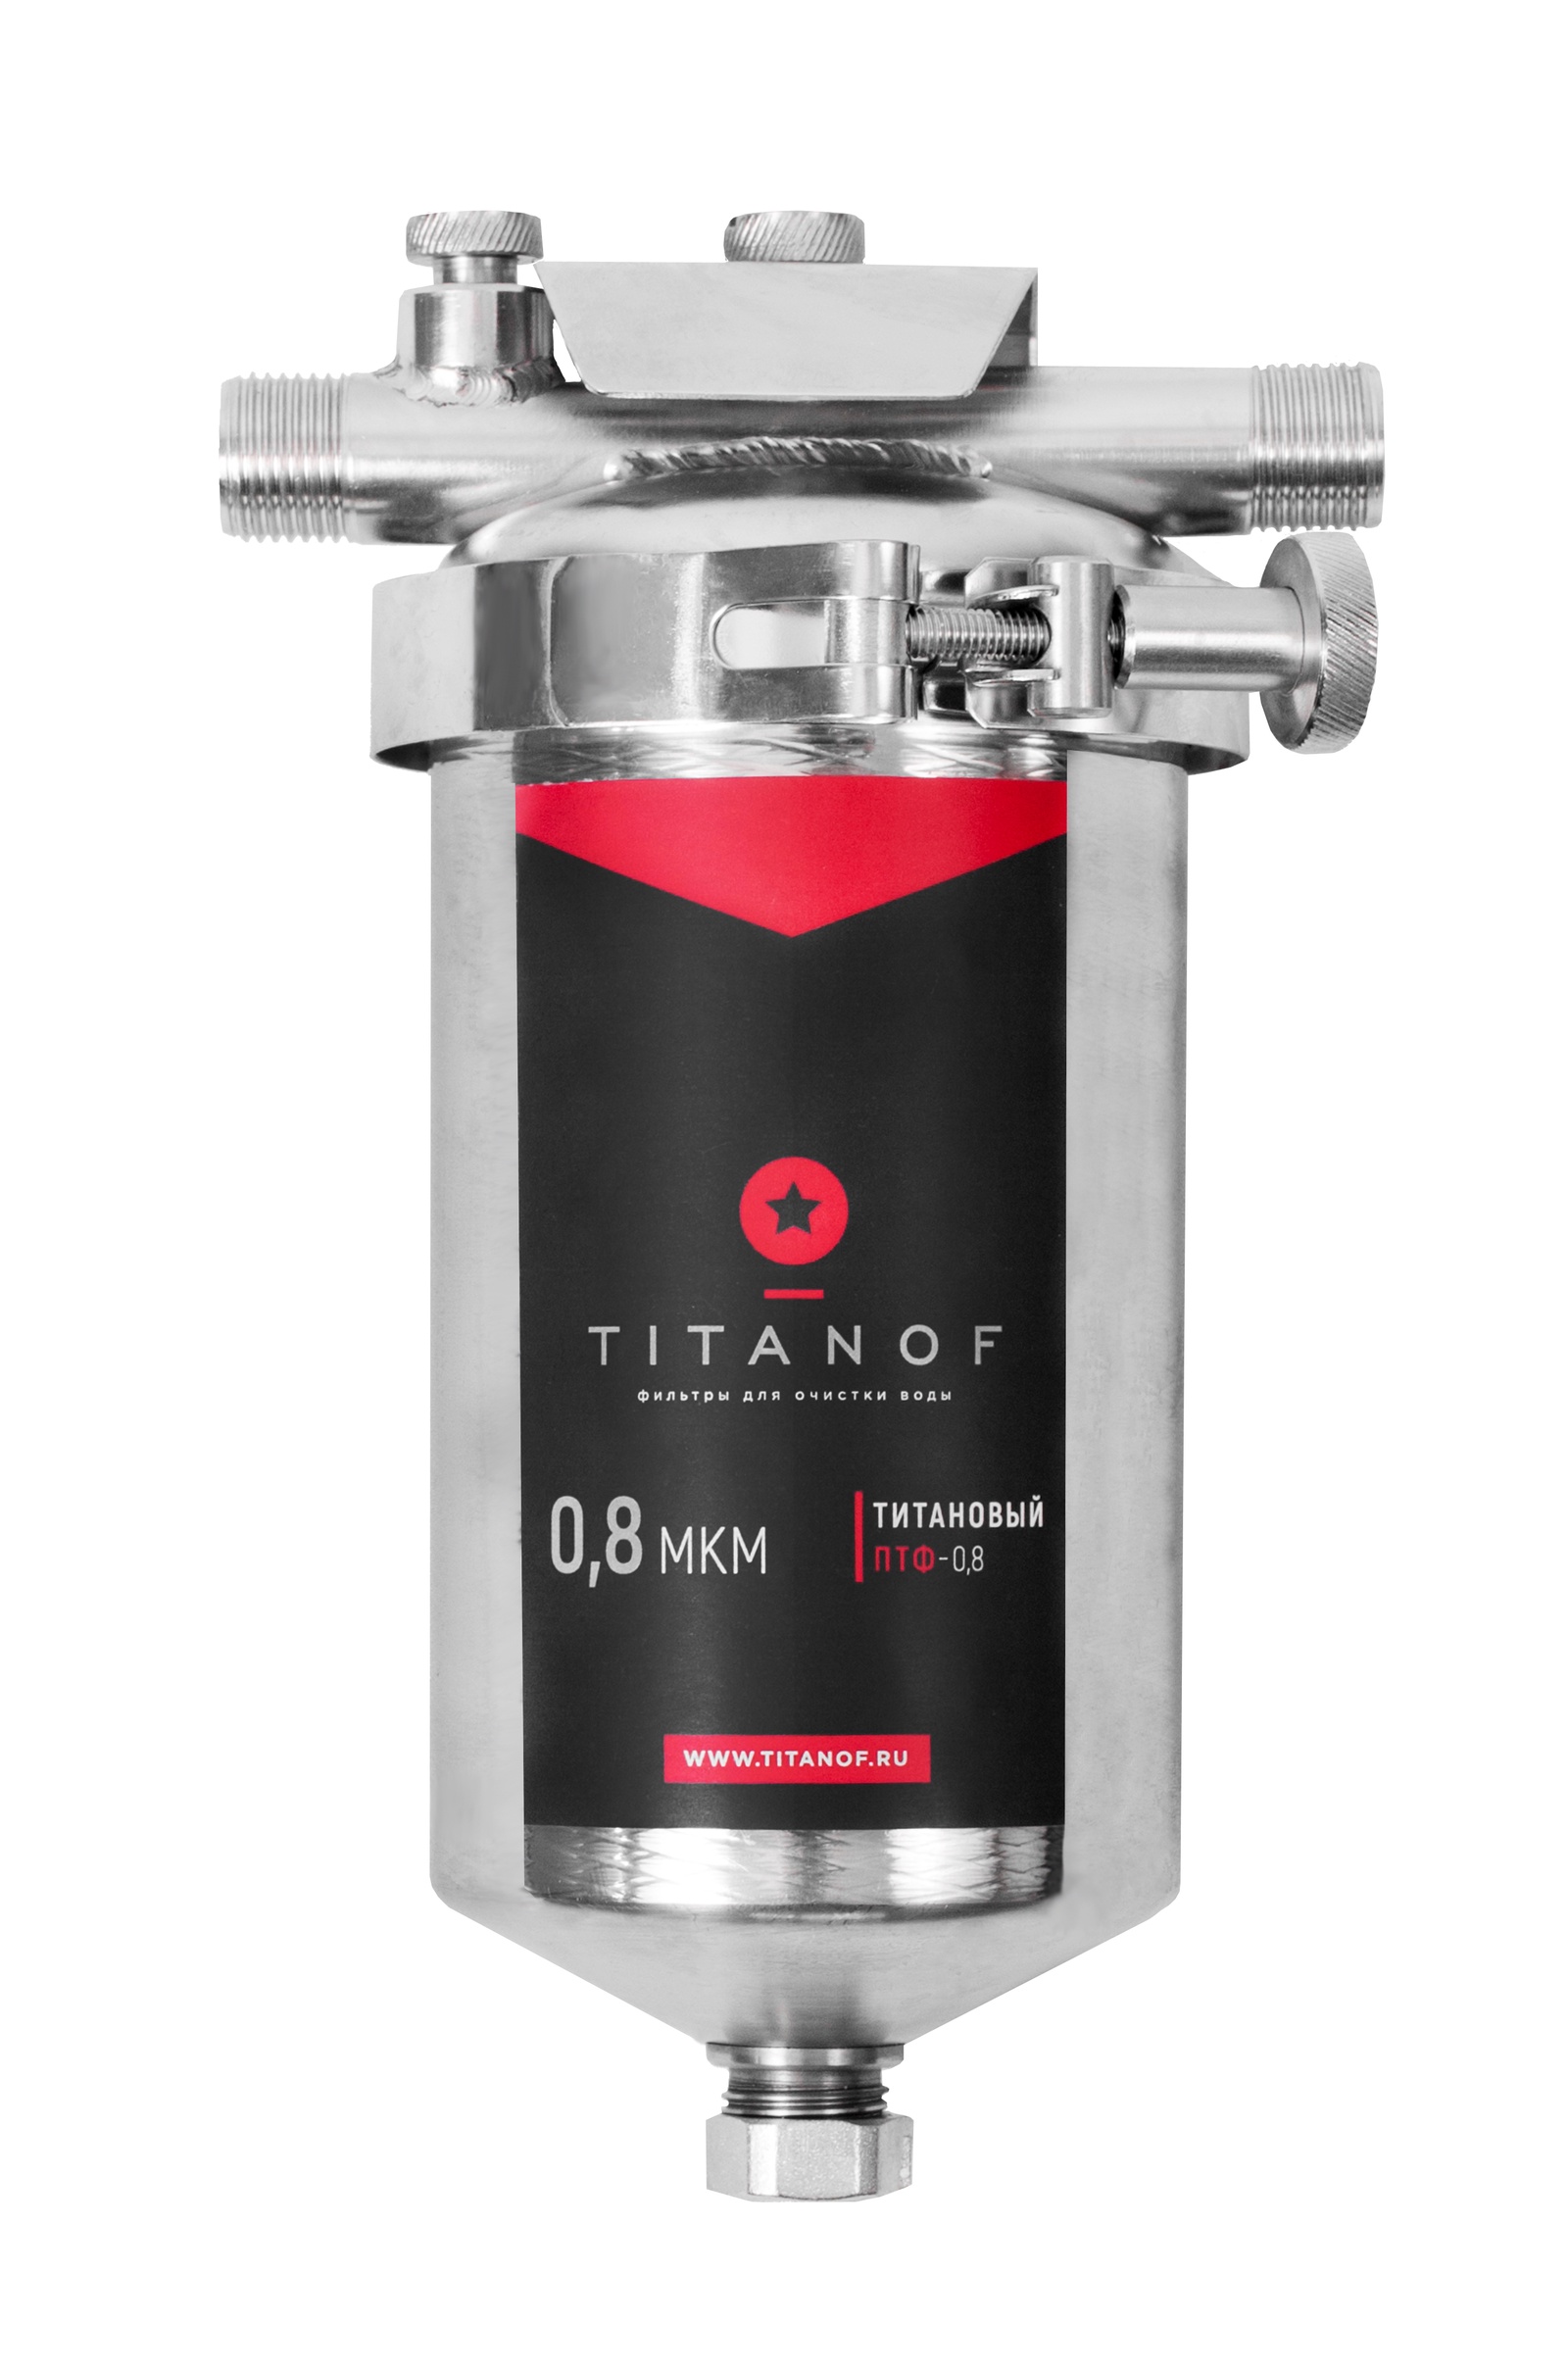 Фильтр титанов отзывы. Титановый фильтр для воды TITANOF ПТФ 1.1 (1000 Л /час). Фильтр магистральный TITANOF ПТФ-1 500 для холодной и горячей воды. Титановый фильтр для воды TITANOF ПТФ 1 500 Л/час 002. Фильтр магистральный TITANOF ПТФ-0.8 250 для холодной и горячей воды.